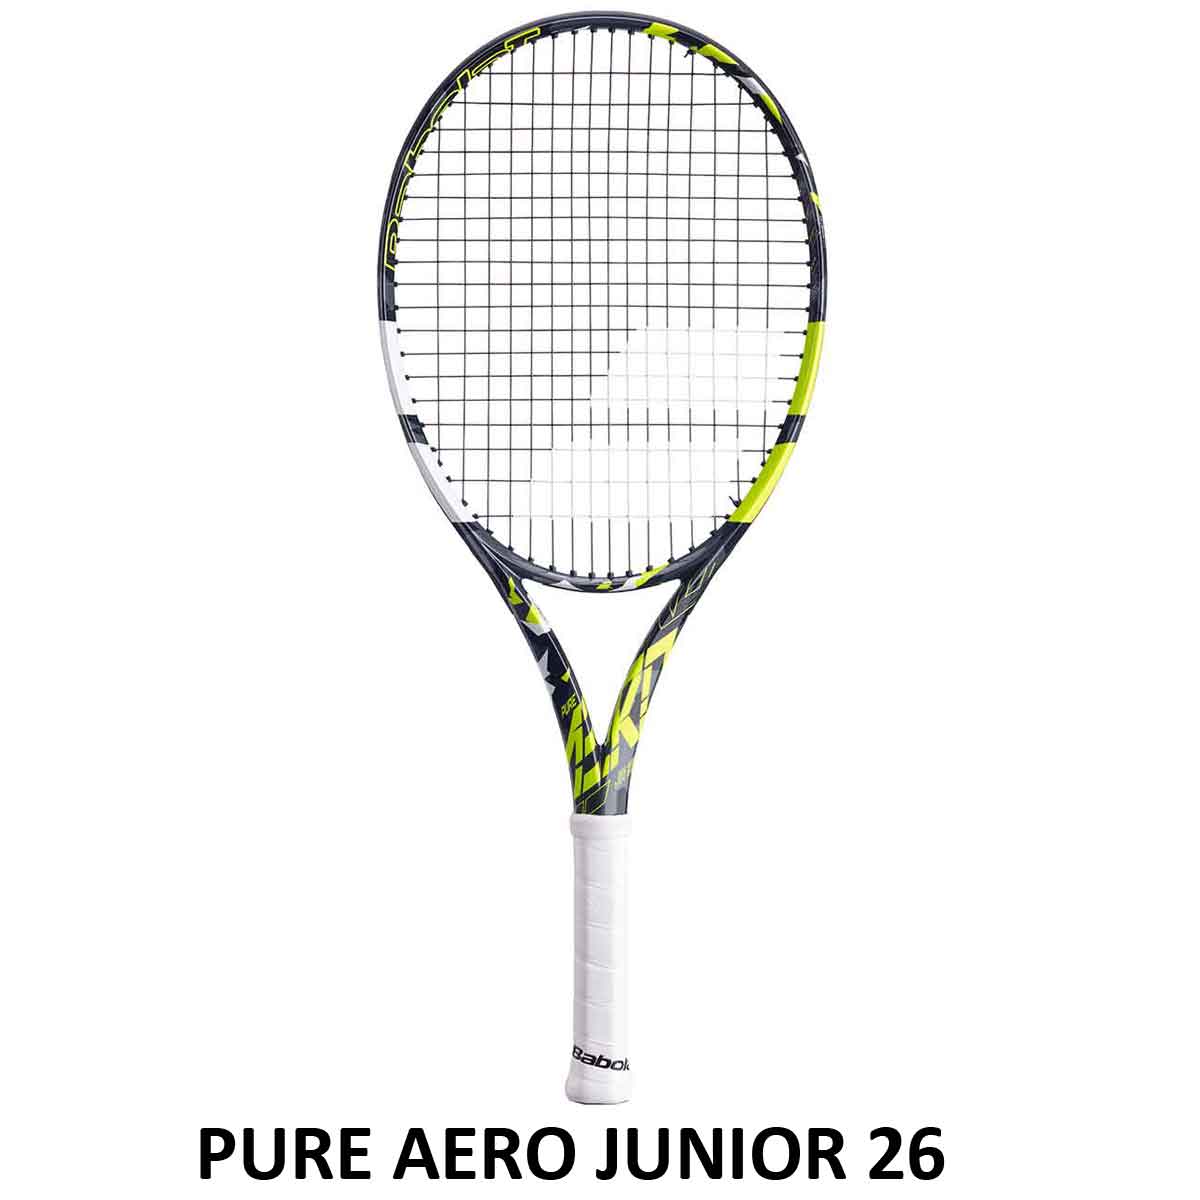 Pure Aero Junior 26